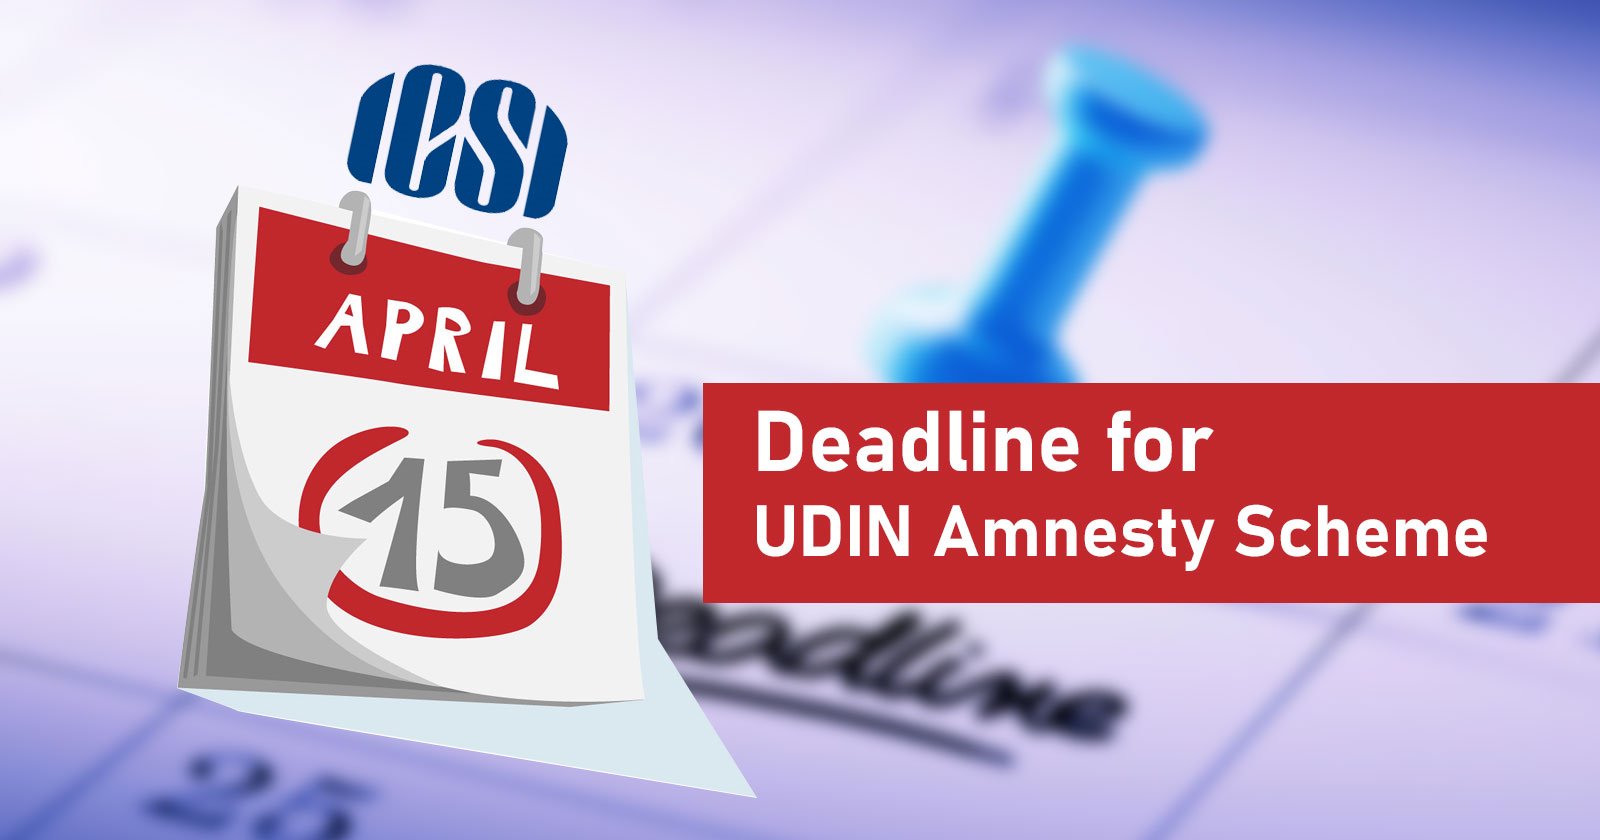 ICSI-UDIN-Amnesty-Scheme-UDIN-Amnesty-Scheme-deadline-April-15